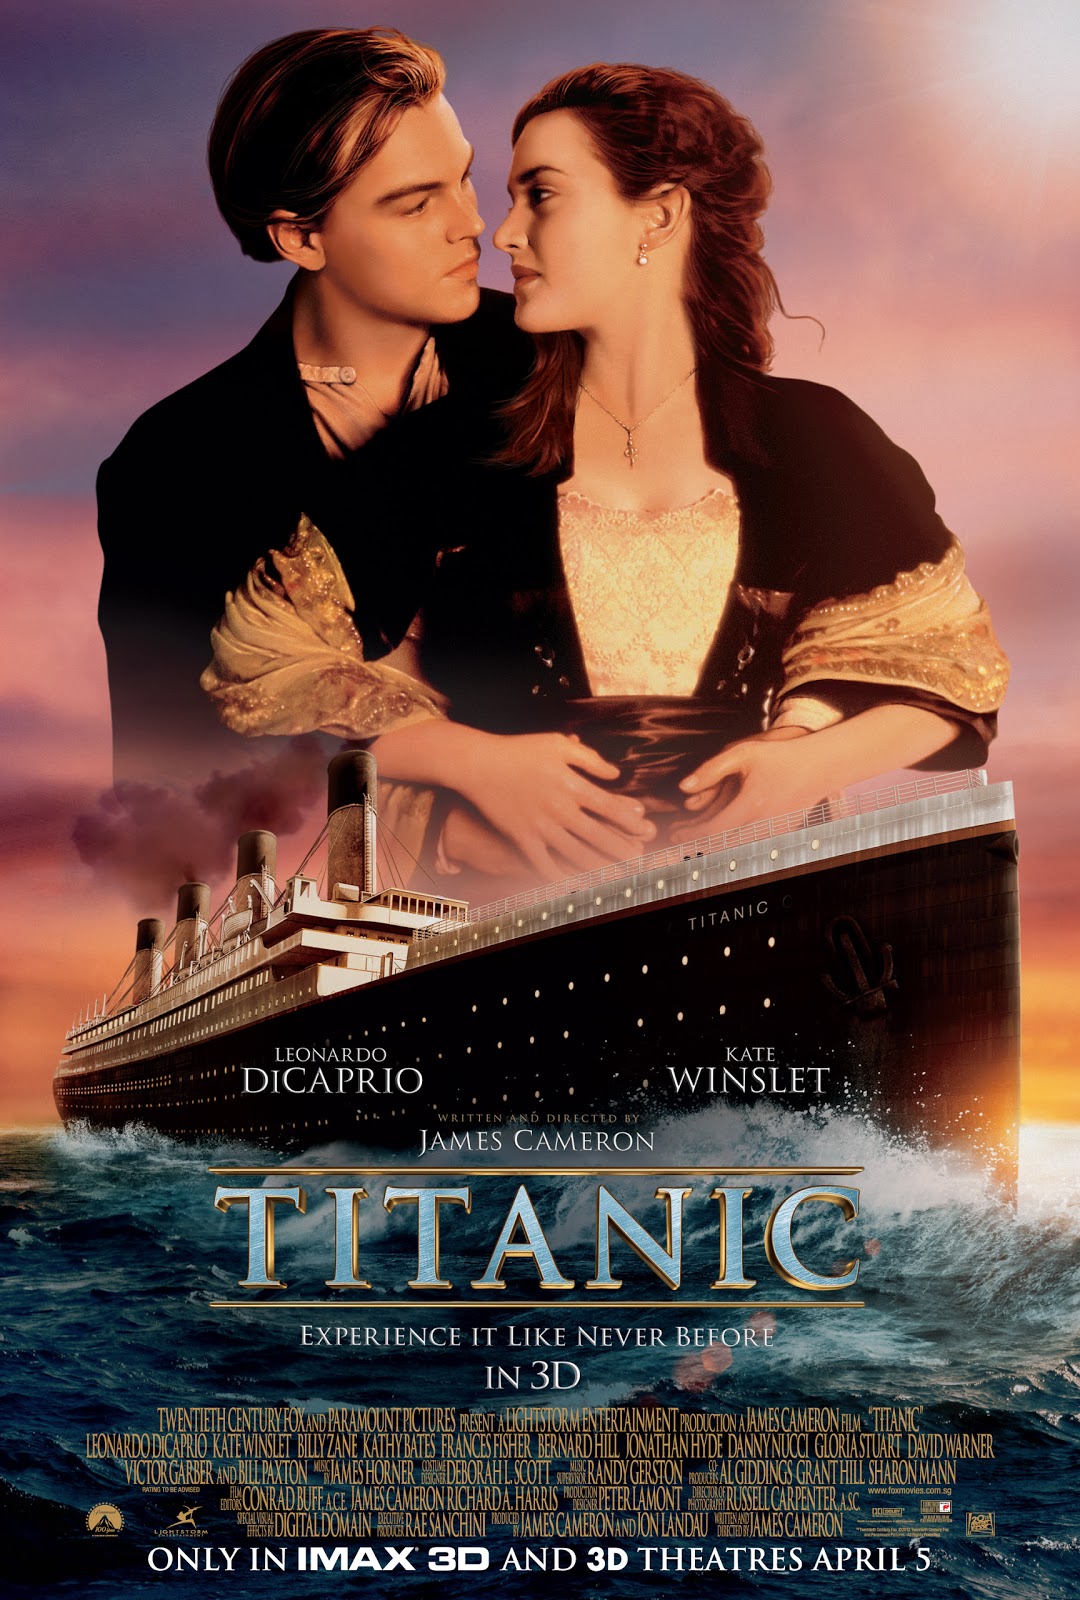 http://2.bp.blogspot.com/-HvX7NG_1o9Y/T3NVzbLjydI/AAAAAAAAJRE/iGi3x0he6k8/s1600/Titanic%203D-Camp%20B-1.jpg